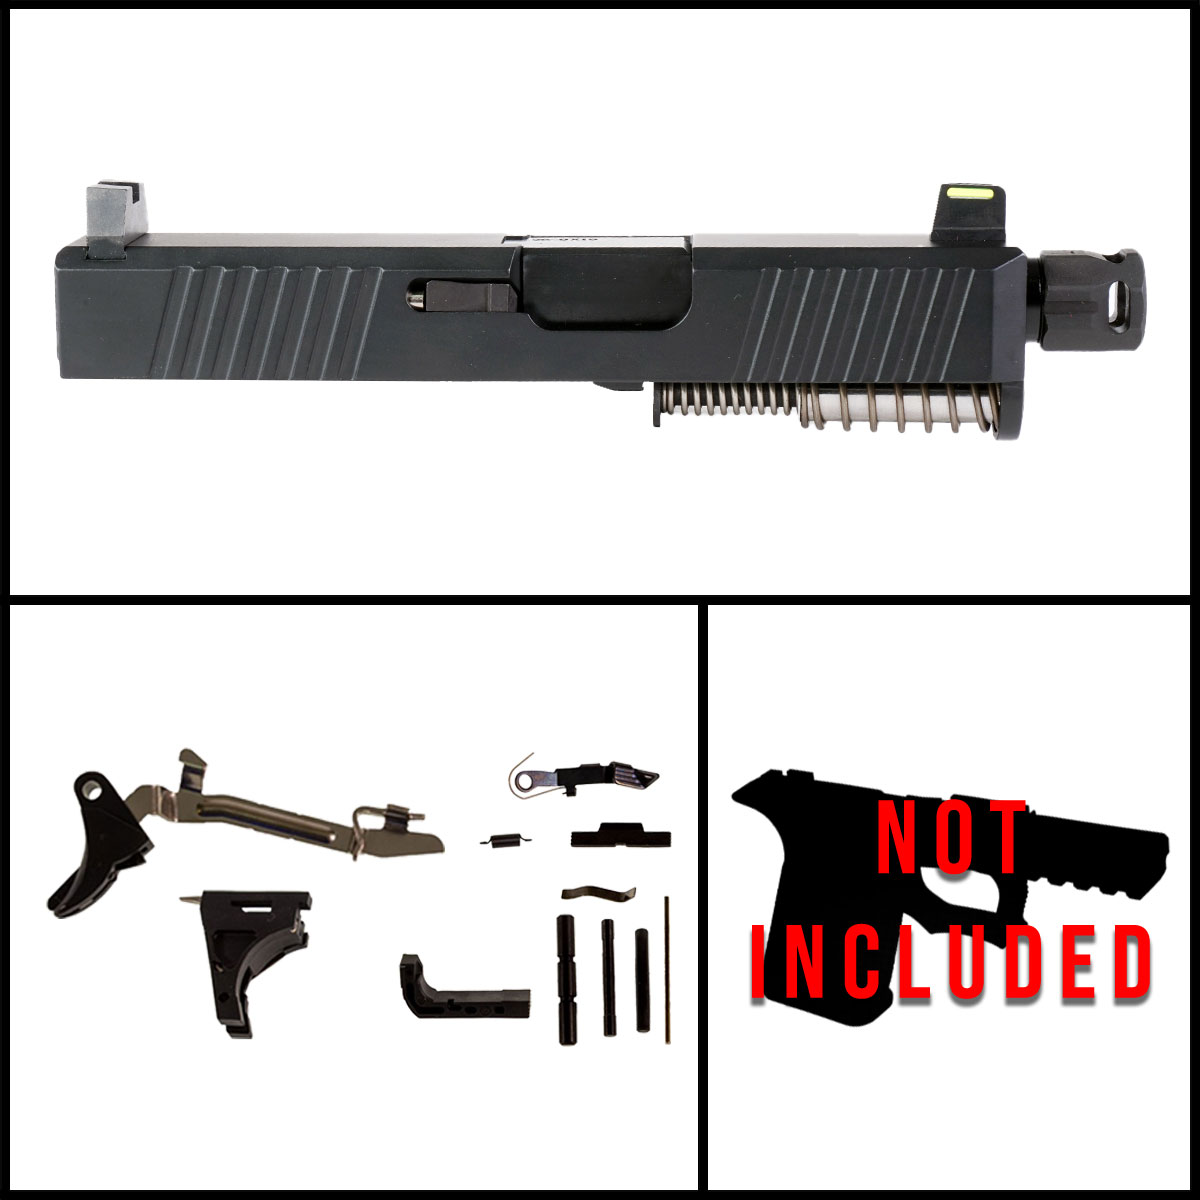 DTT 'Providence Power' 9mm Full Gun Kit - Glock 26 Gen 1-3 Compatible